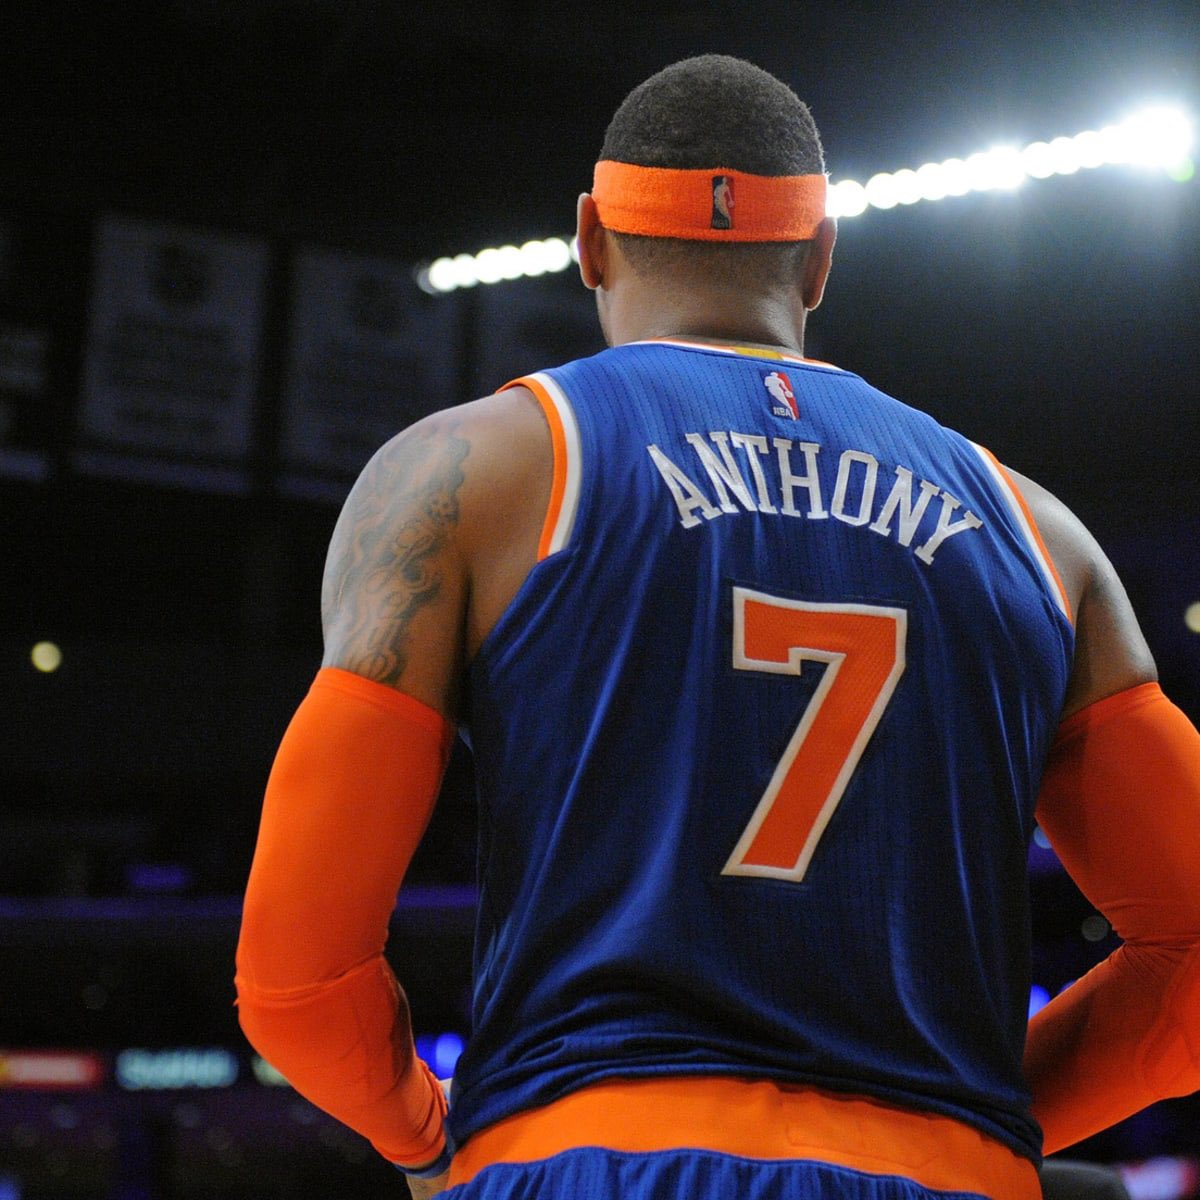 Should Knicks retire Carmelo Anthony's jersey?